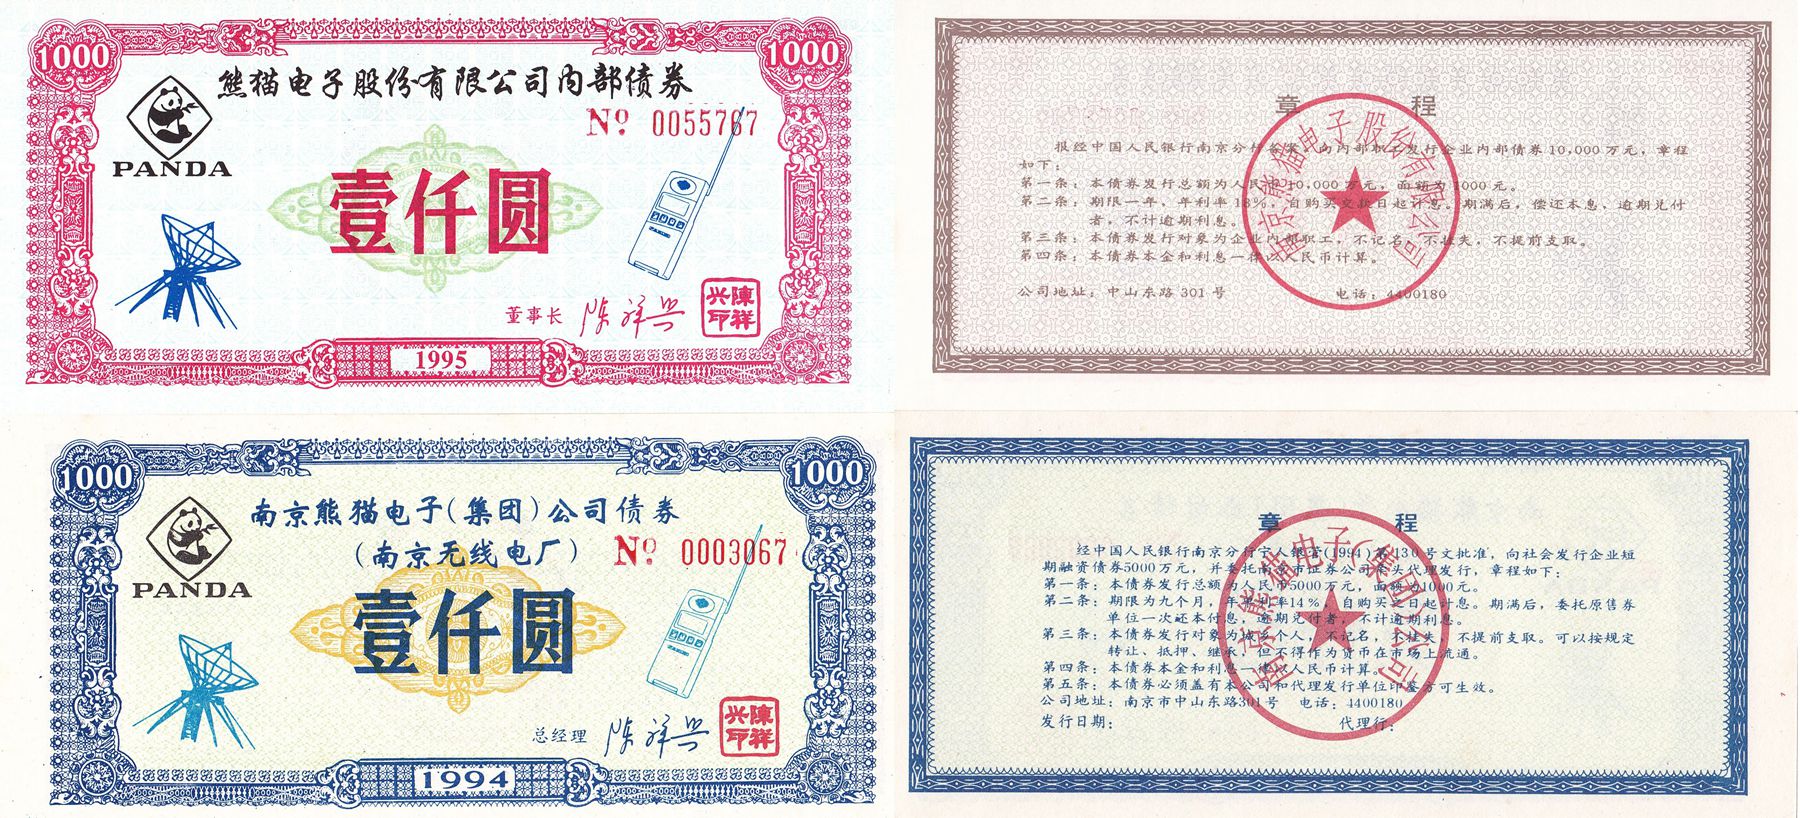 B8022, Panda Electronic Co, 2 pcs Bonds of 1994, China